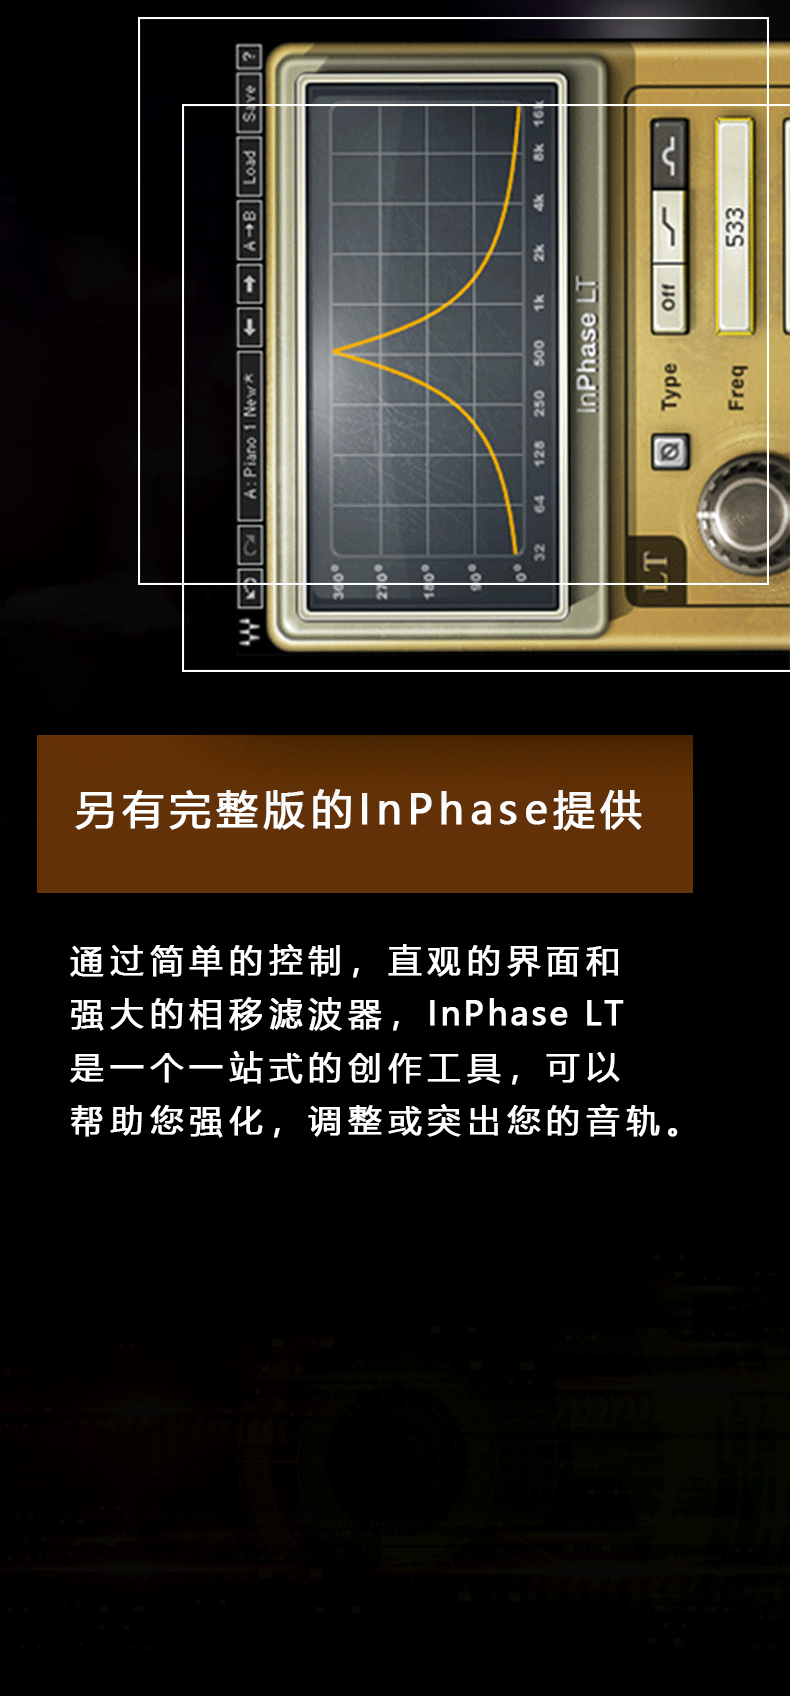 InPhase LT插件修音(图4)